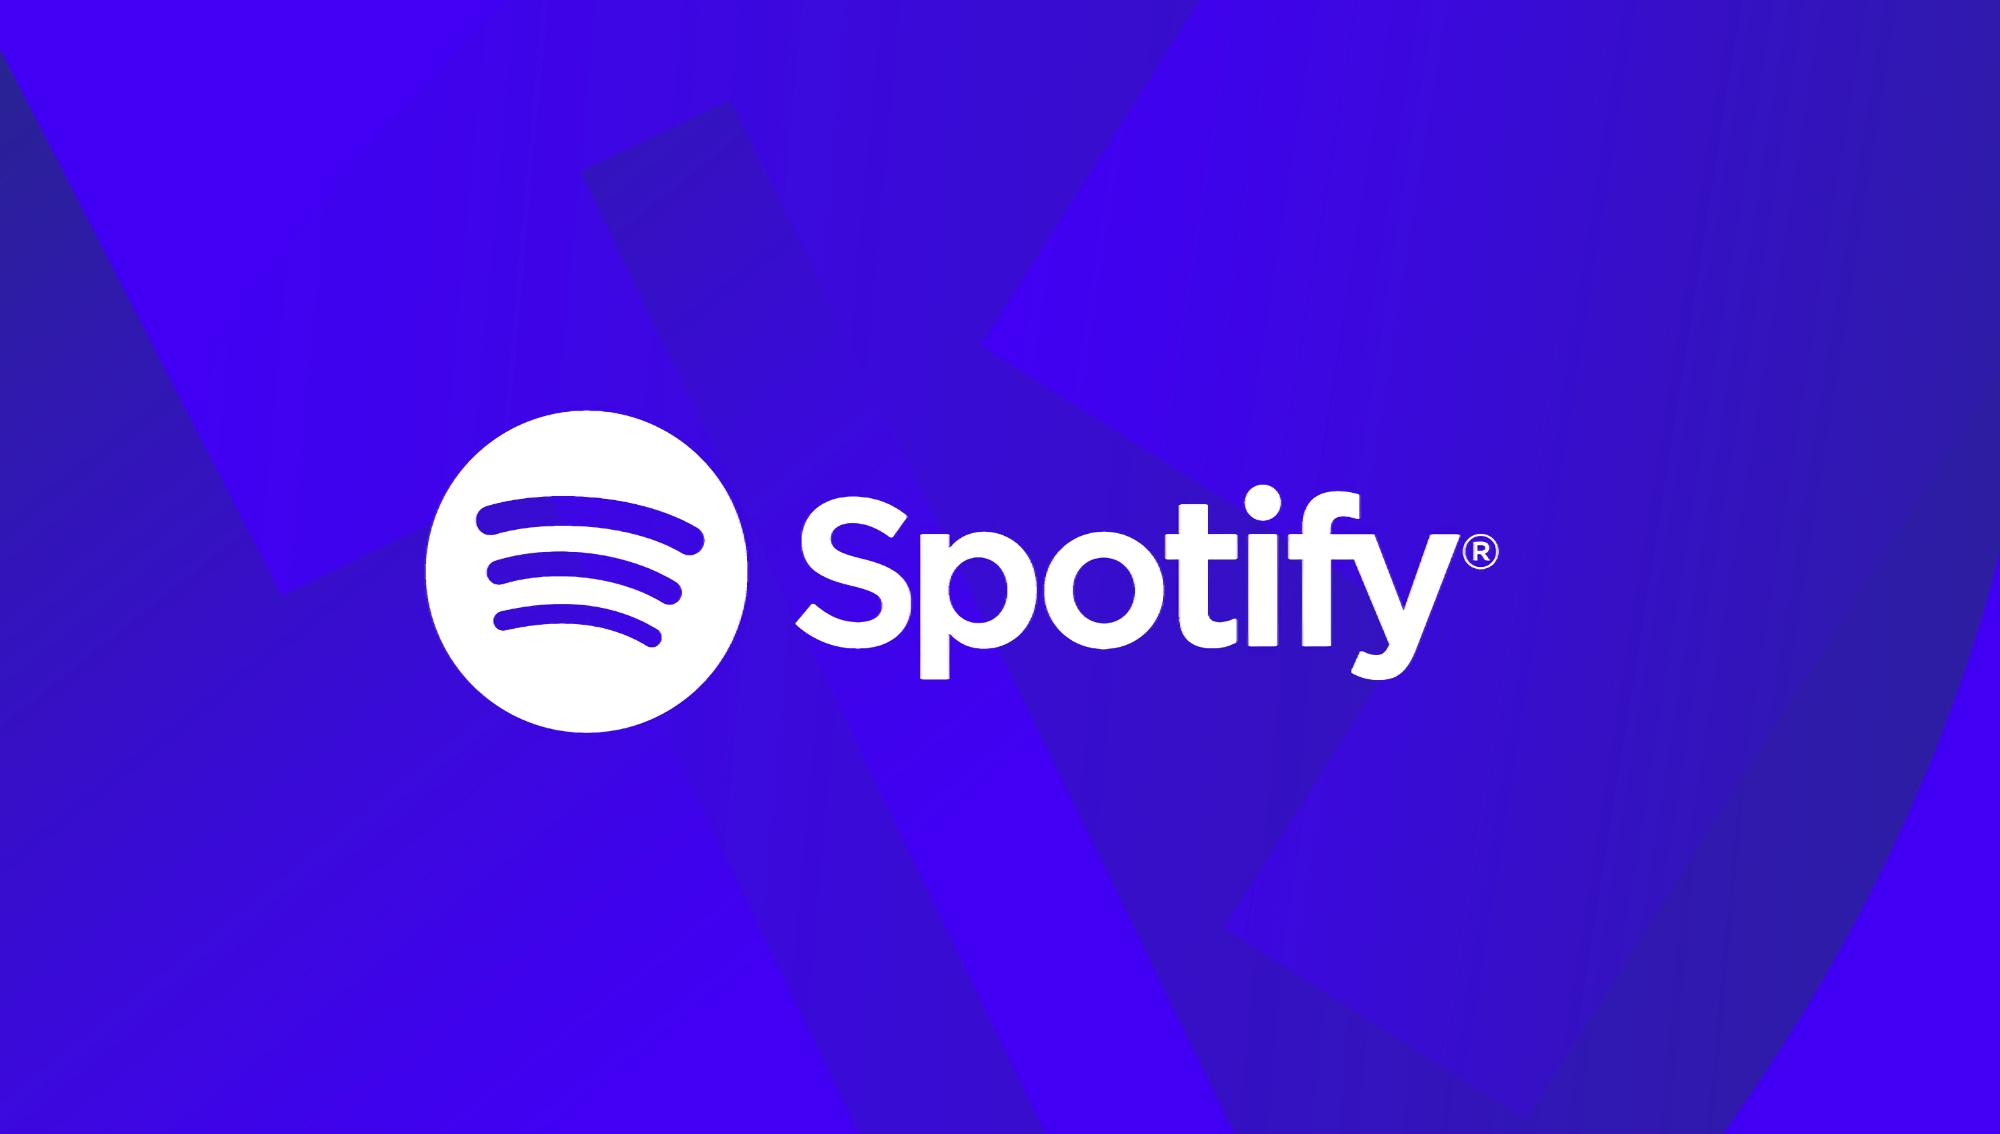 Spotify höjer priset för Premium-abonnemang i 53 länder runt om i världen